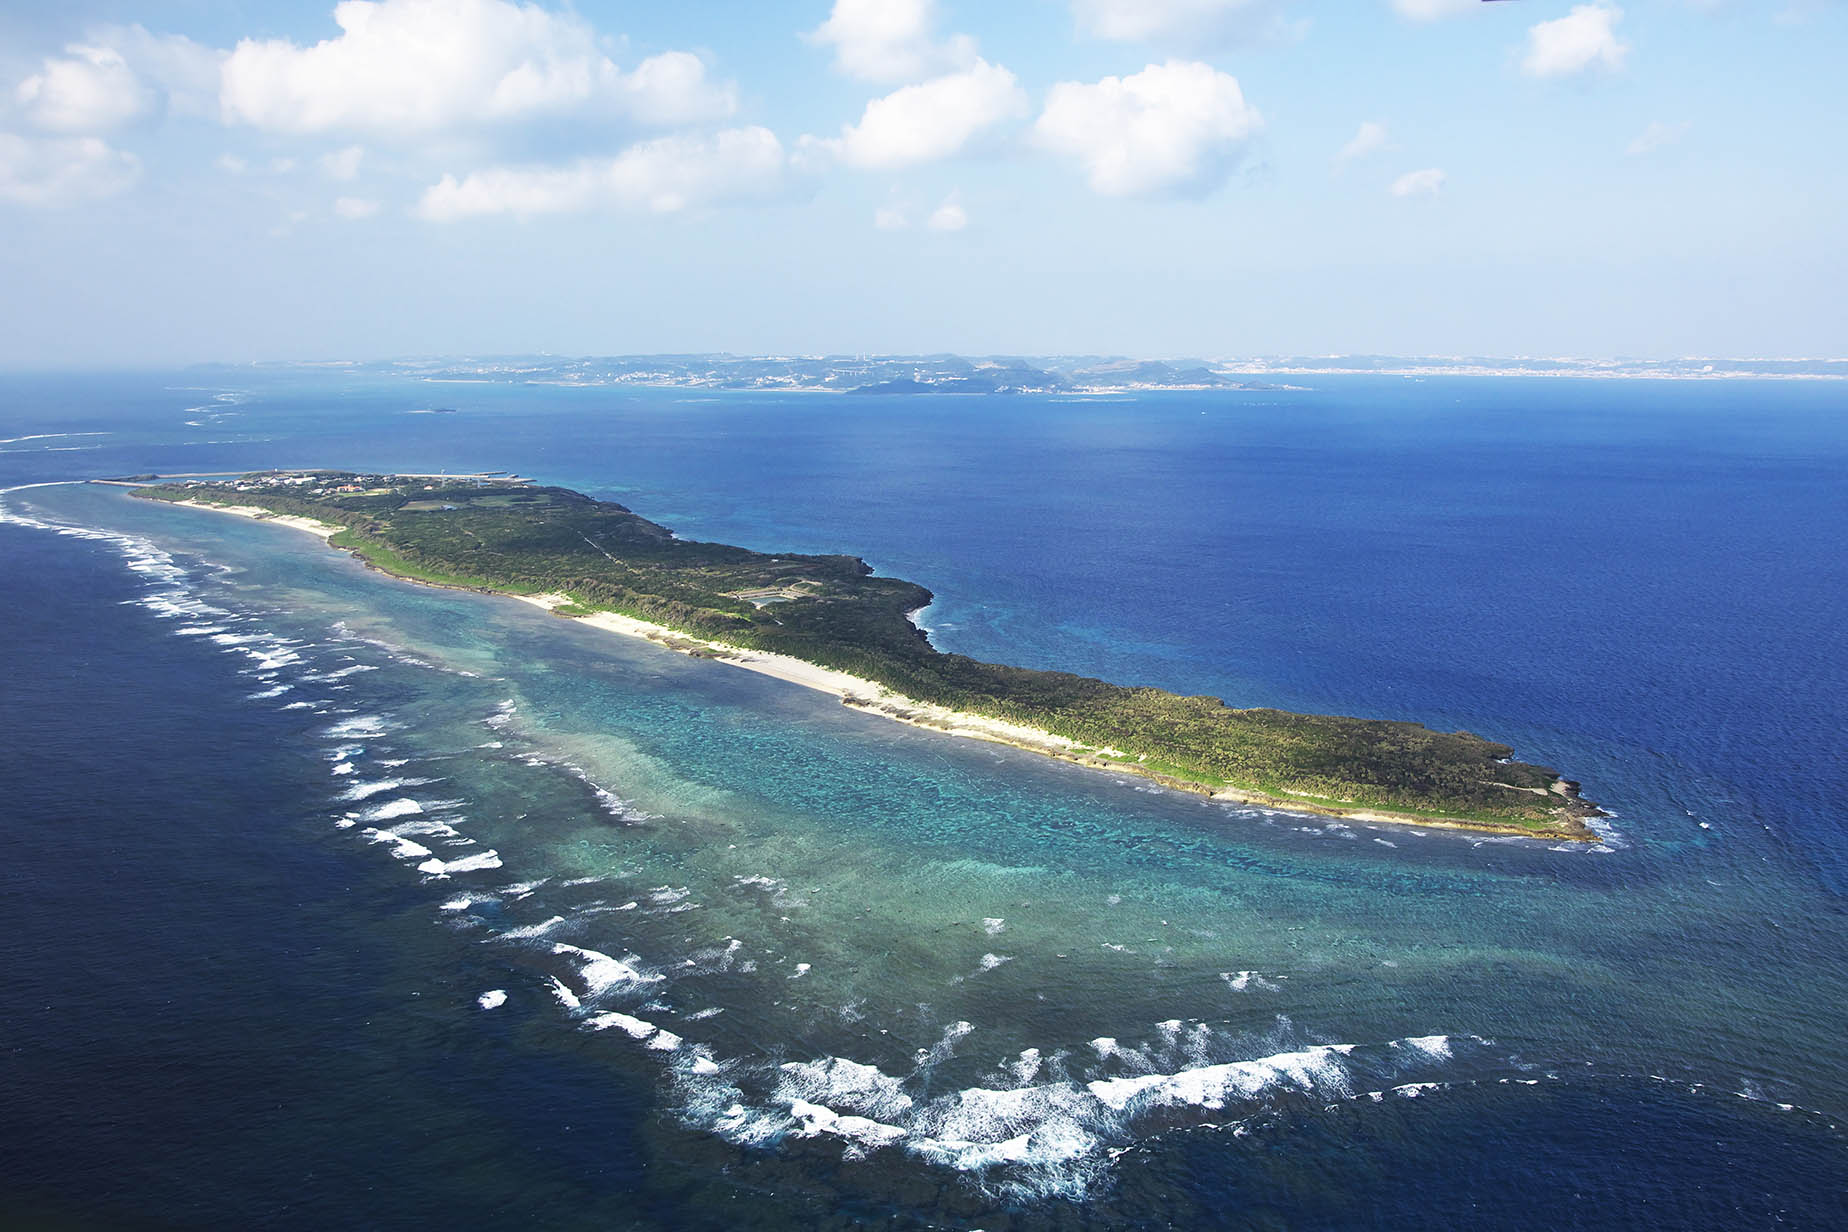 kudaka island coastal scenery